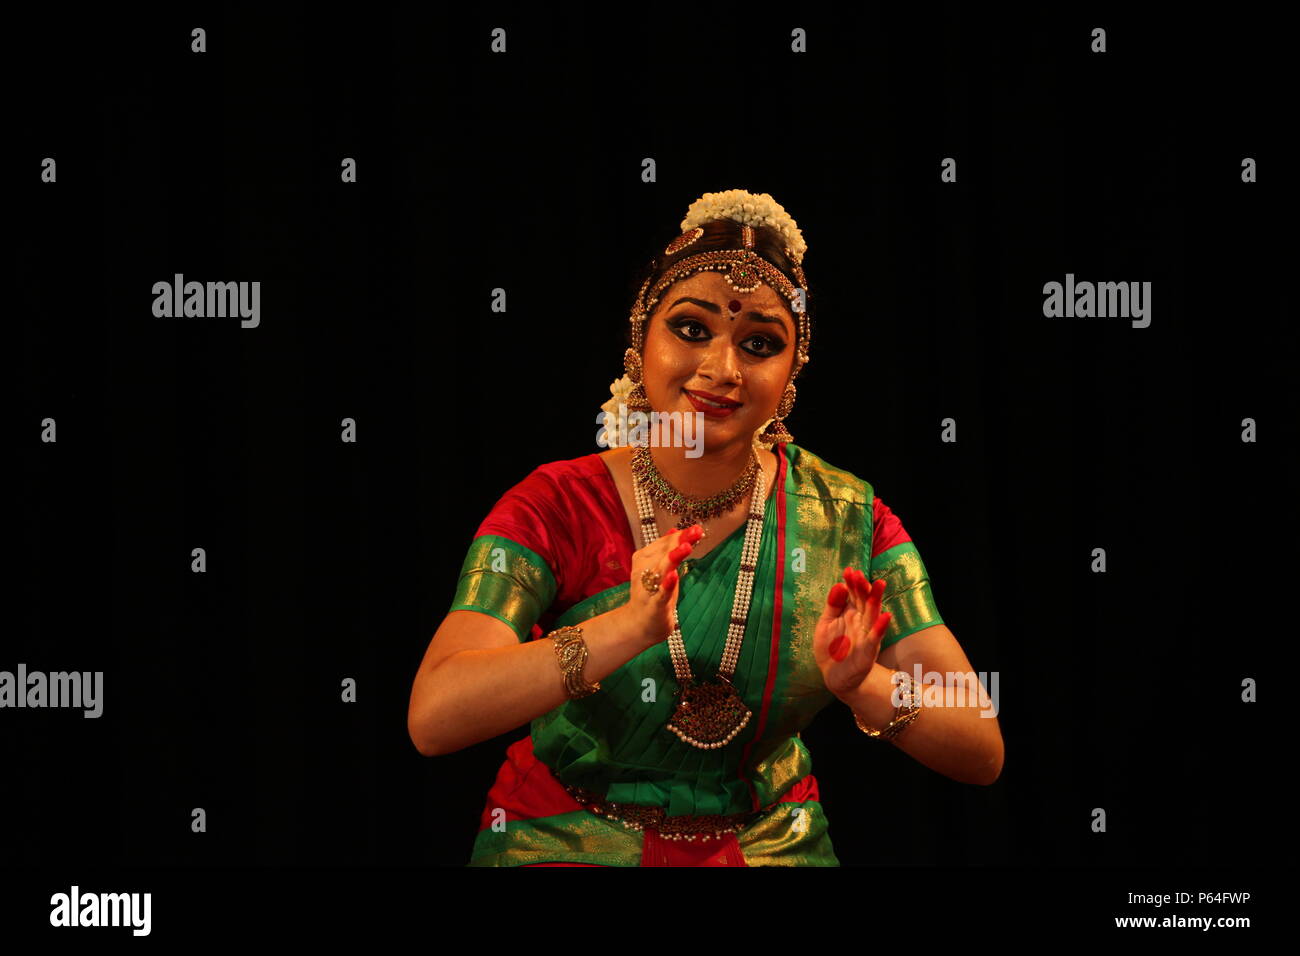 யோகாசனம் பெயர்கள் படங்கள் | Yoga Asanas Names With Pictures in Tamil